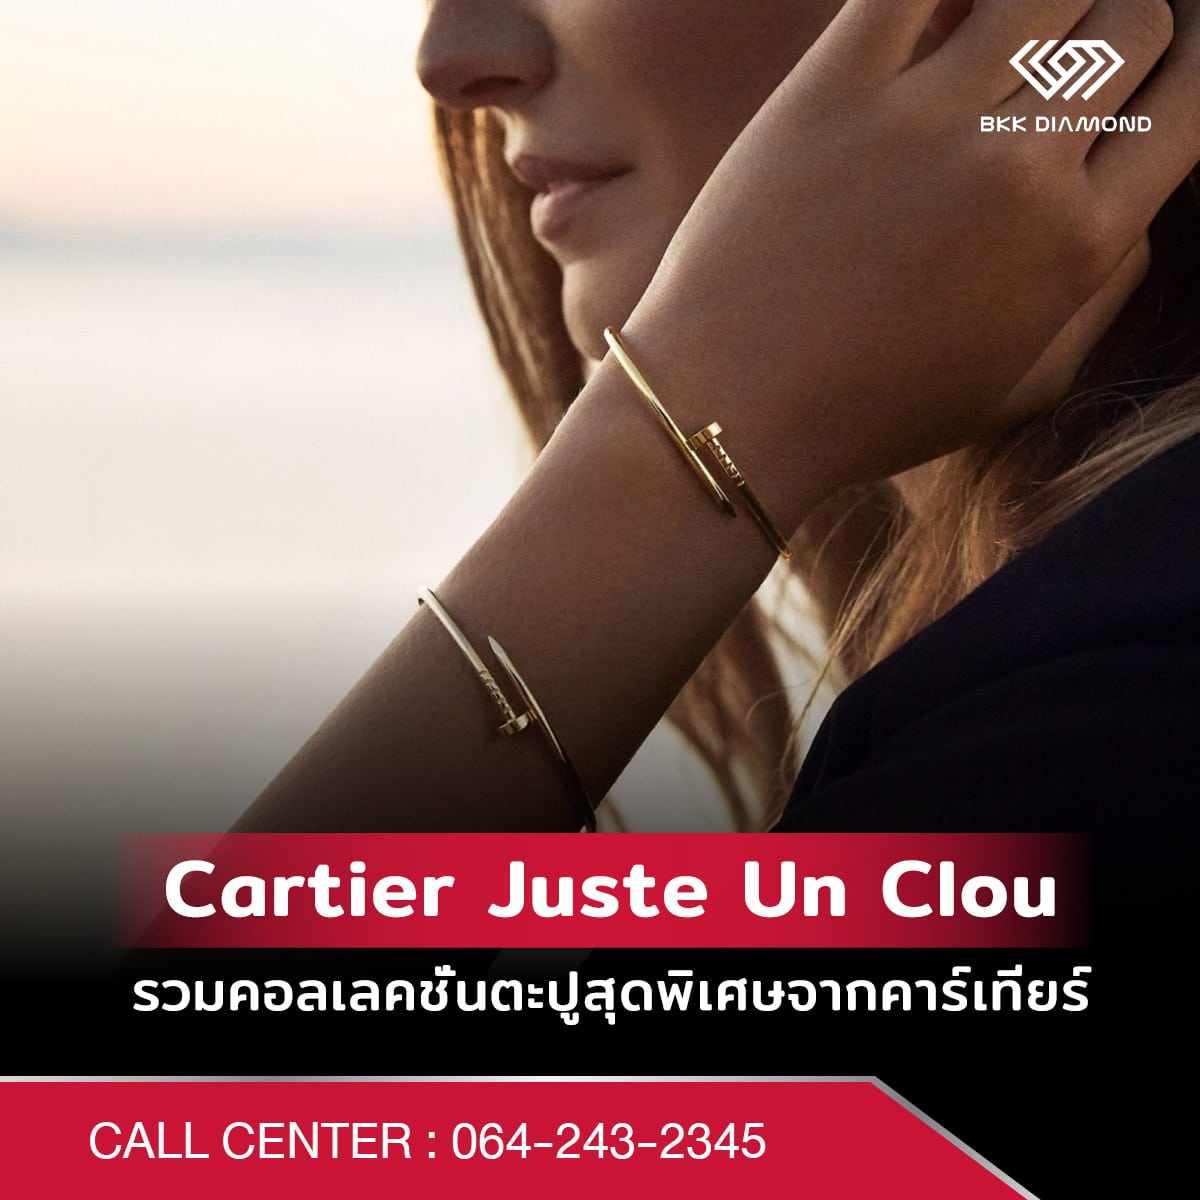 Cartier Juste Un Clou รวมคอลเลคชั่นตะปูสุดพิเศษจากคาร์เทียร์